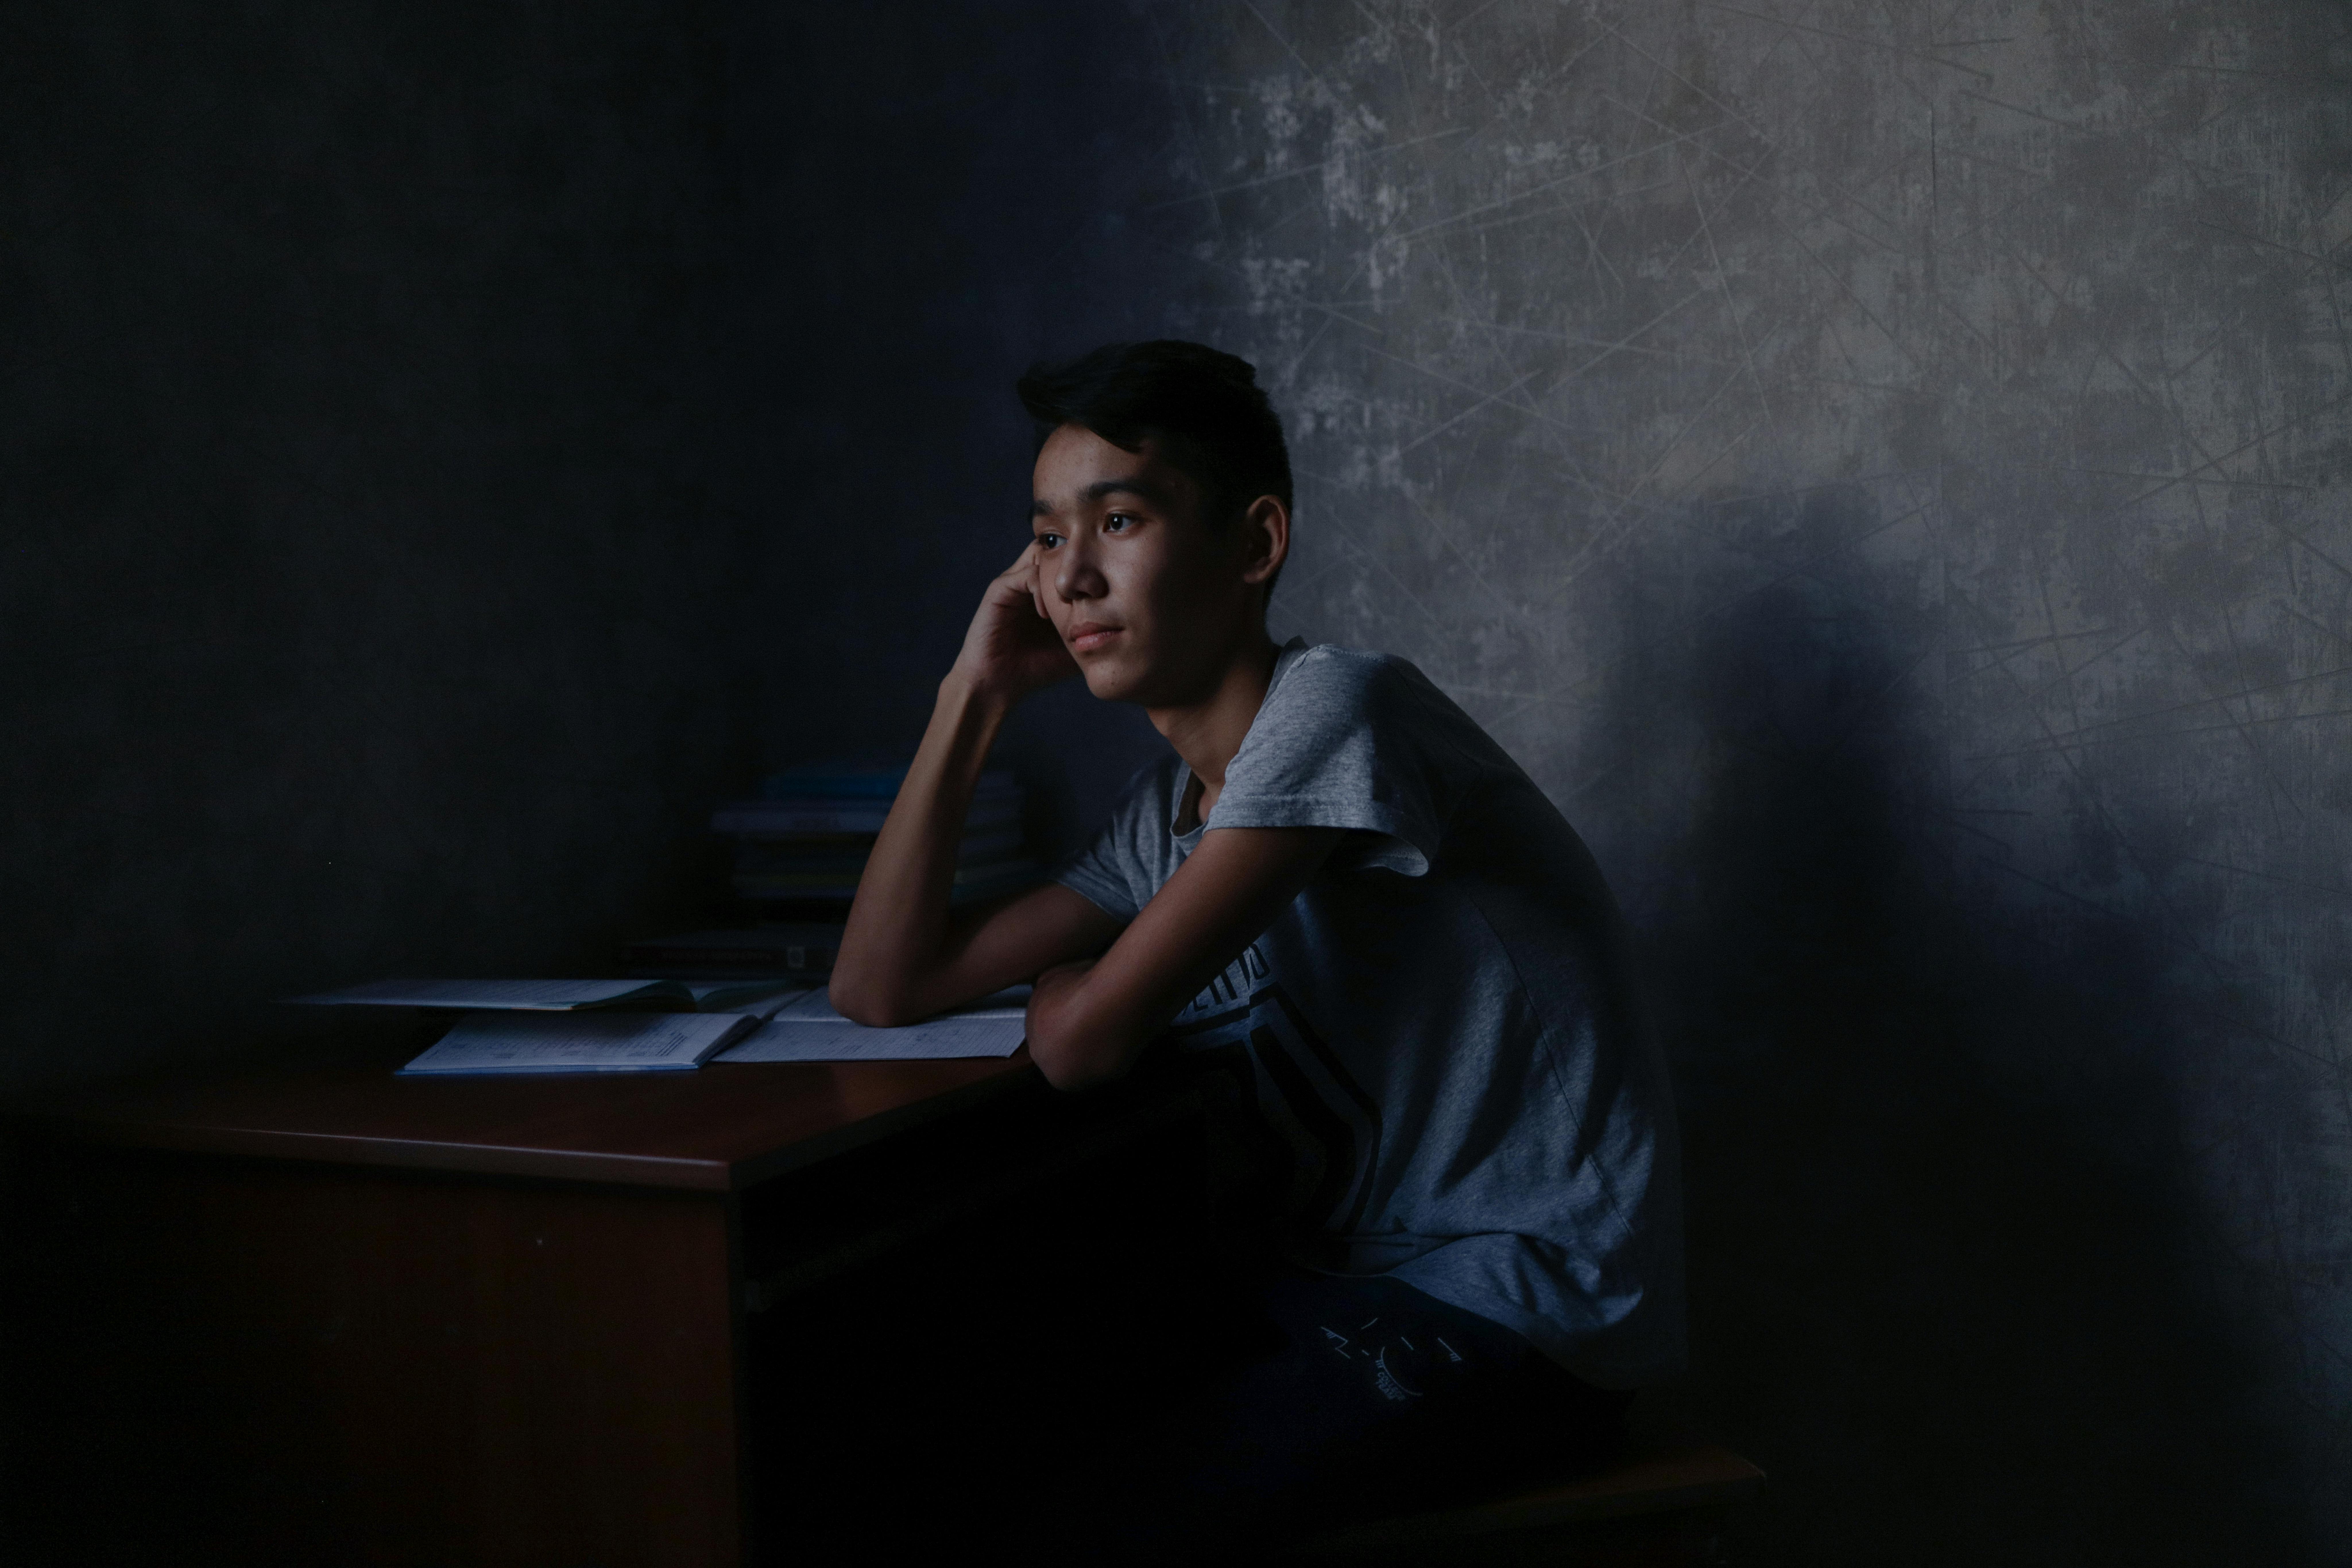 Baurzhan, 14 anni, sembra non riuscire a concentrarsi sui compiti. Vive a Shymkent, in Kazakhstan